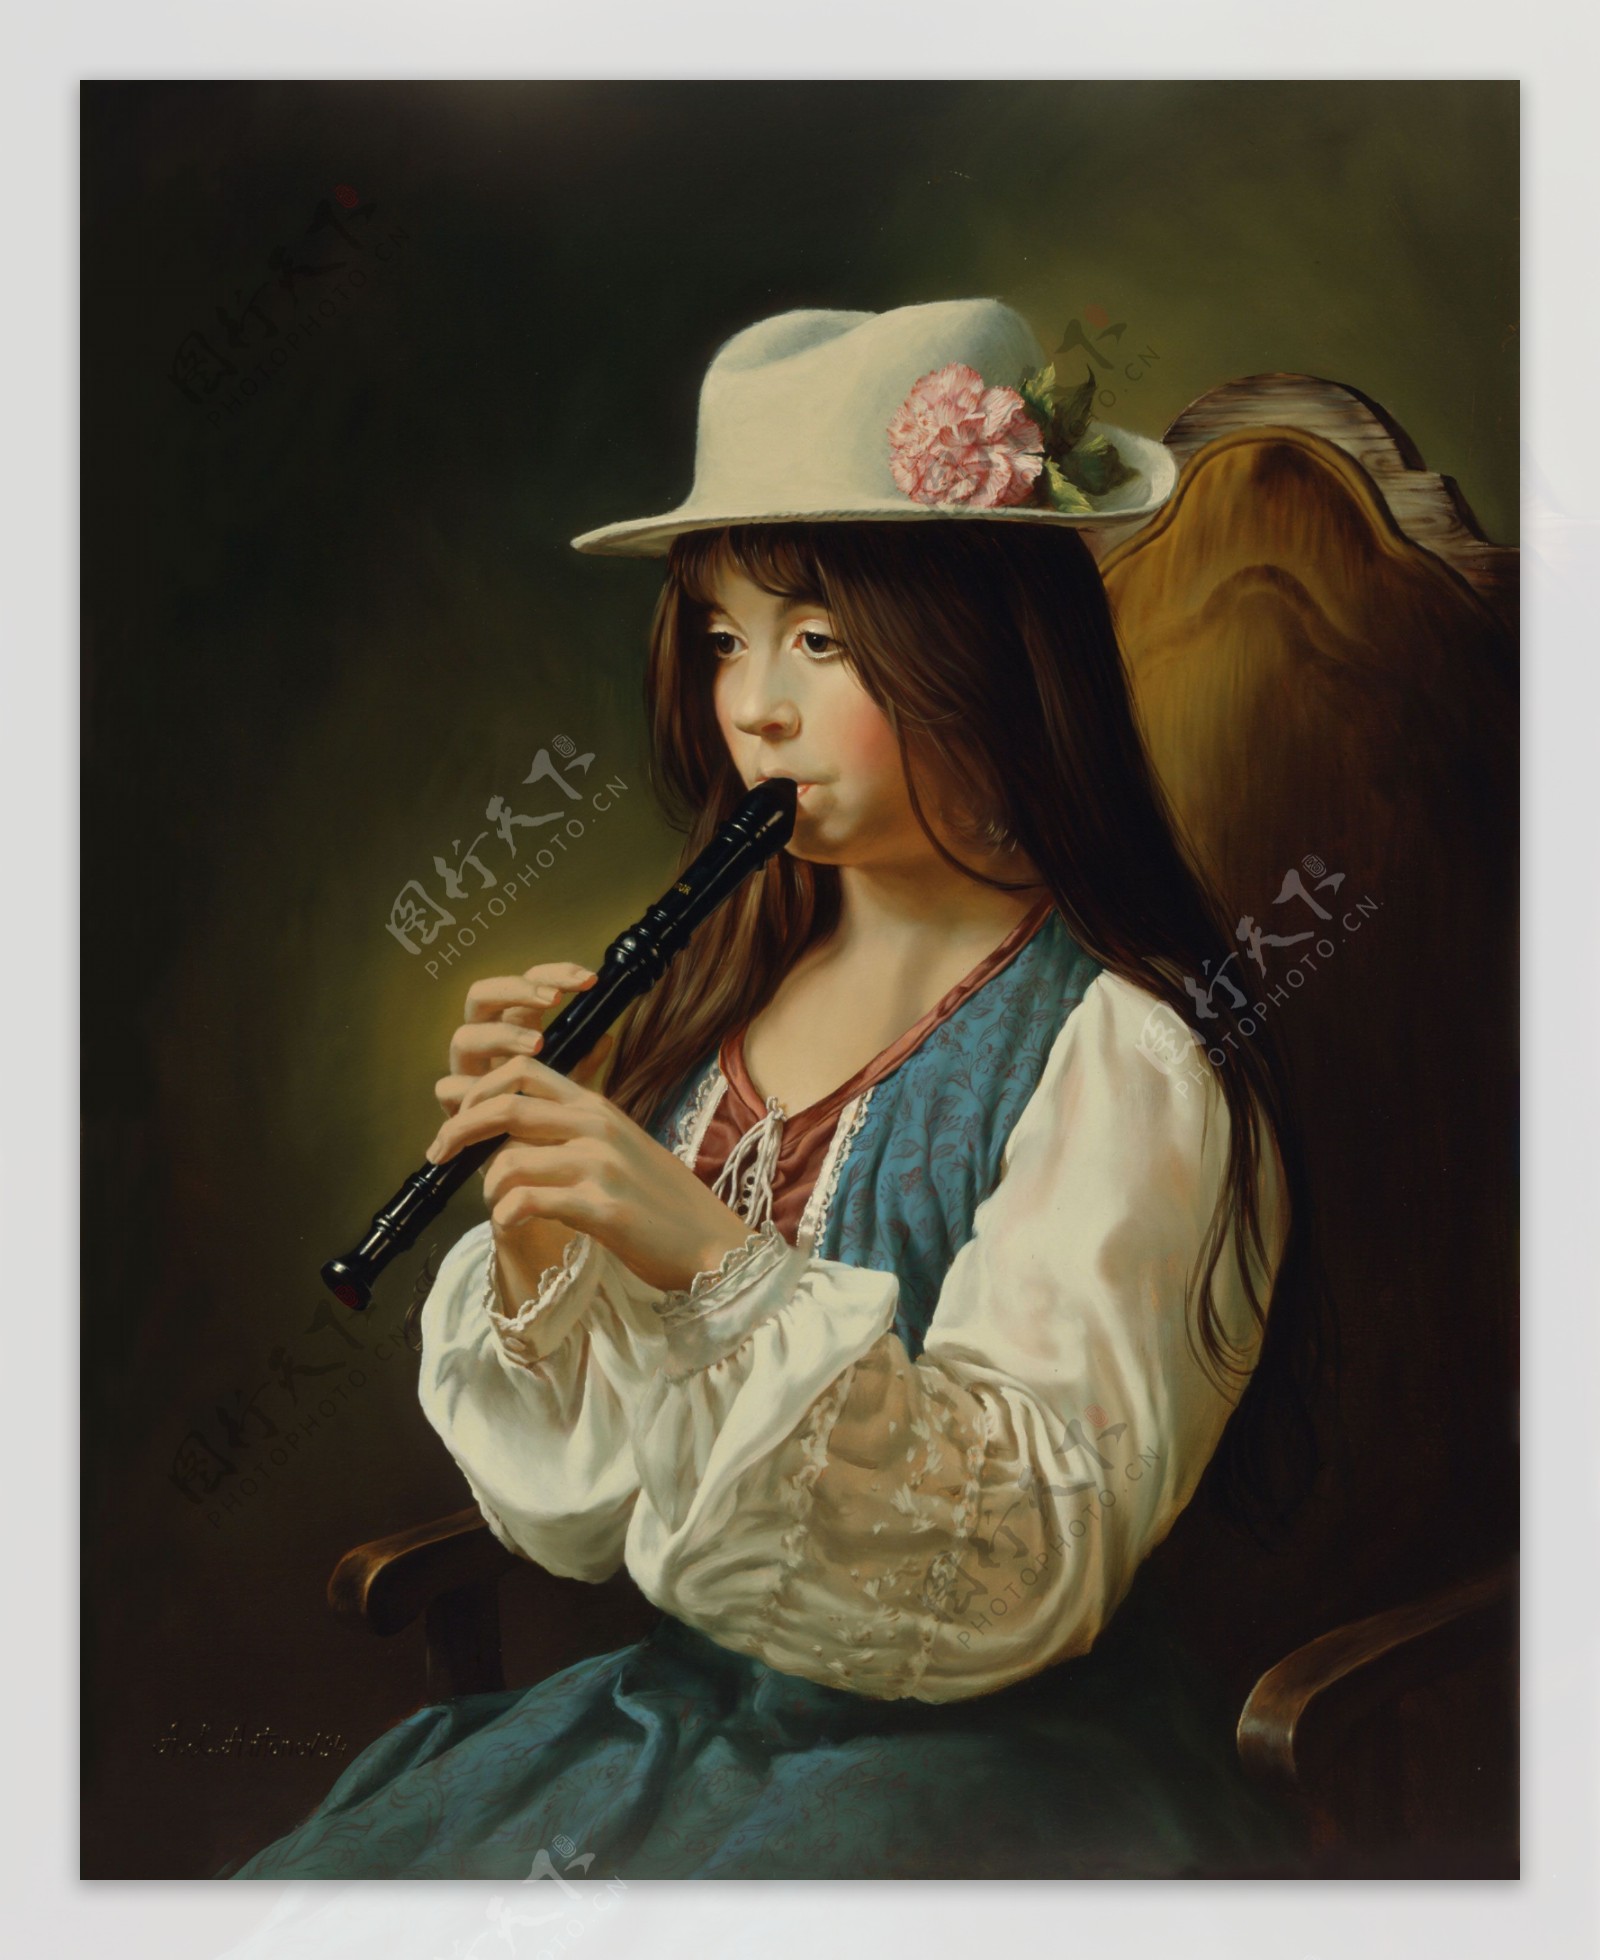 吹笛子的女孩图片